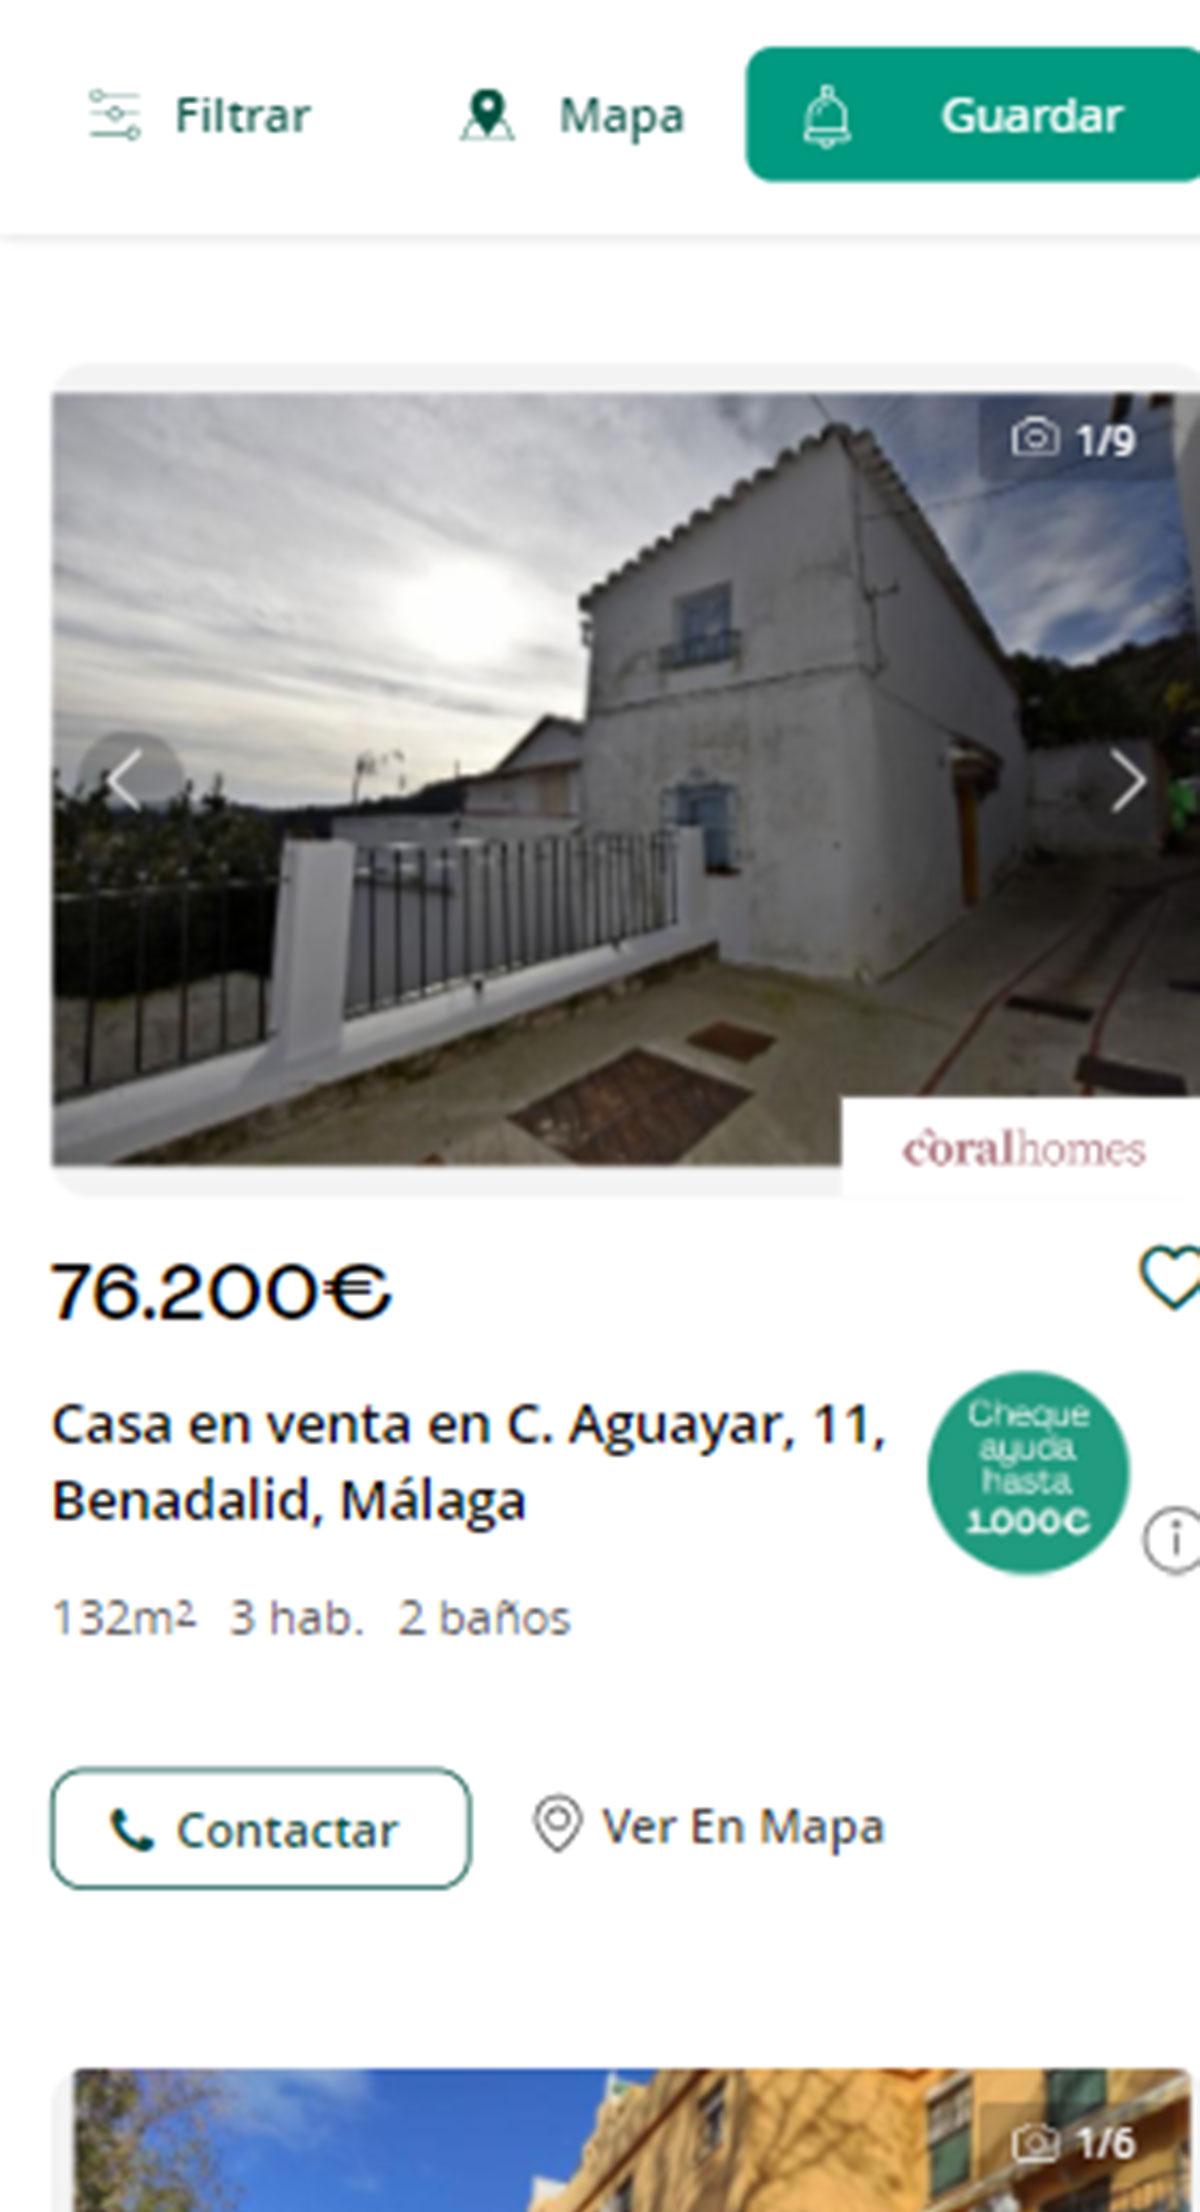 Piso a la venta en Málaga por 76.200 euros